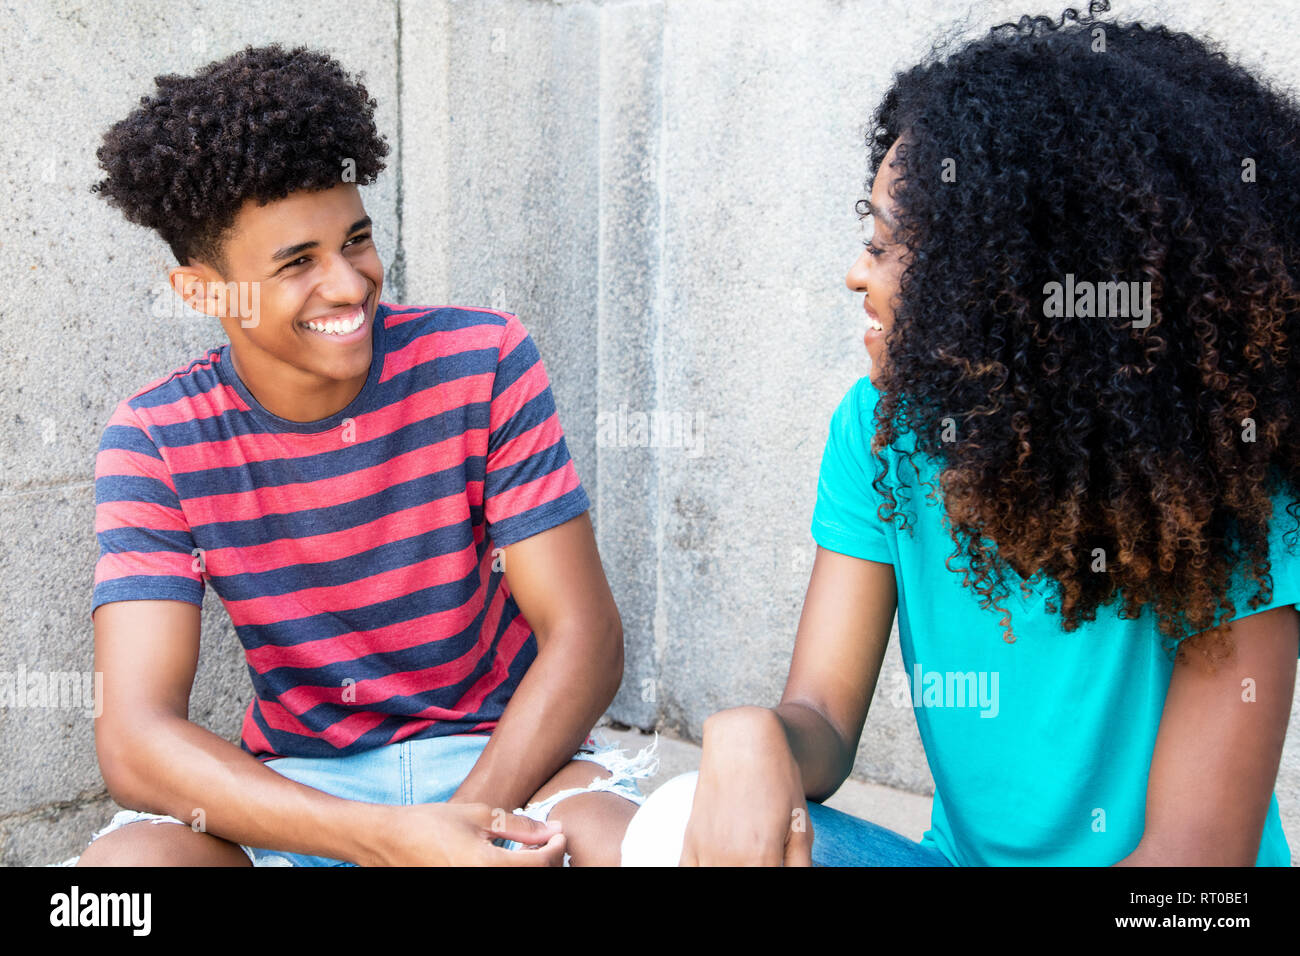 Los adolescentes afroamericanos divertirse al aire libre en verano Foto de stock